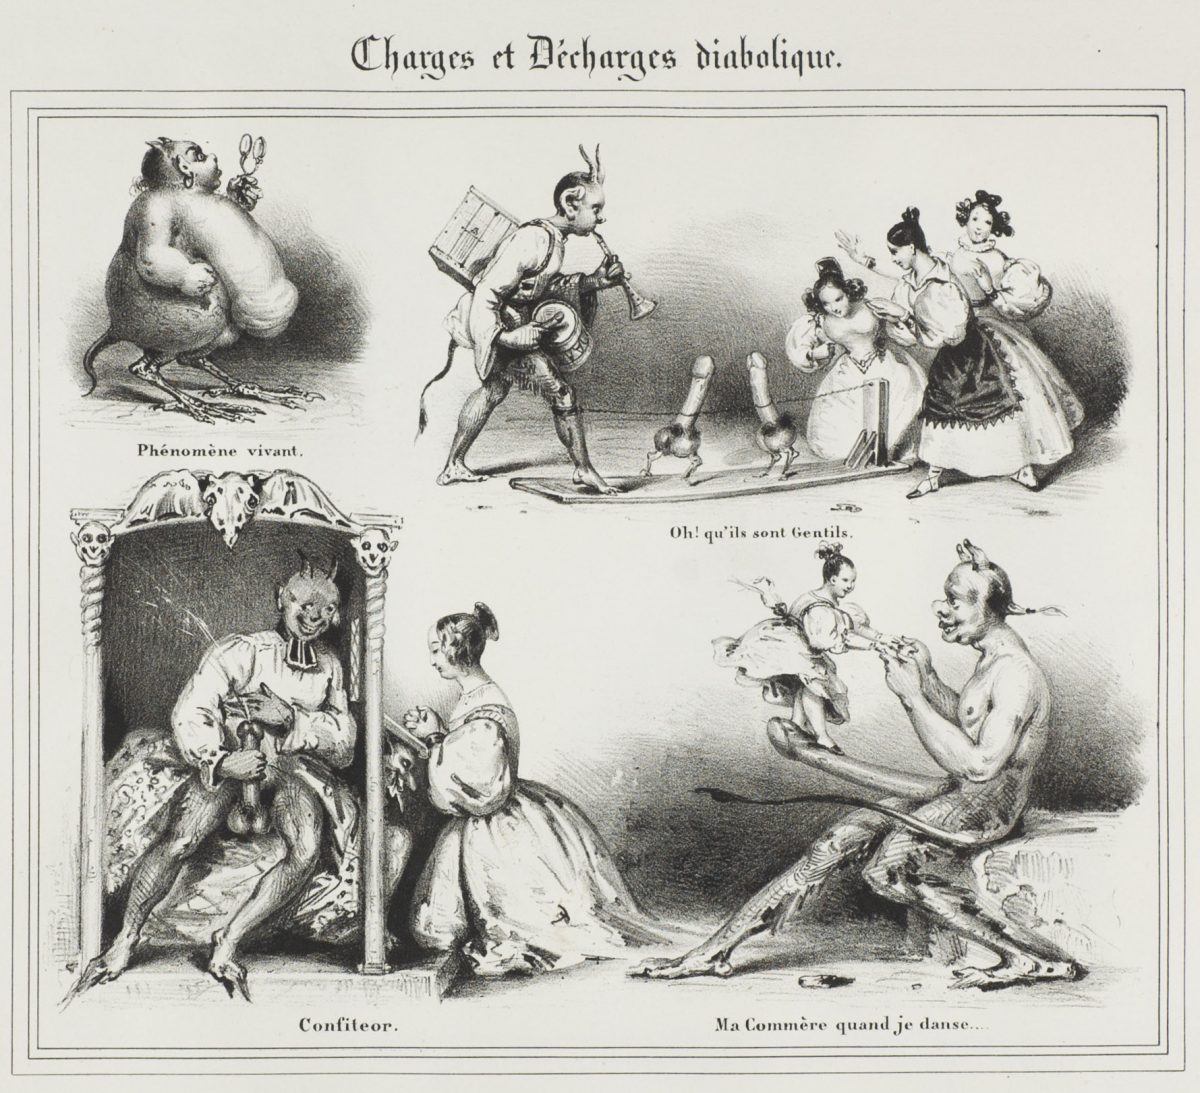 Charges et Décharges diaboliques by Eugène Lepoittevin (1830)